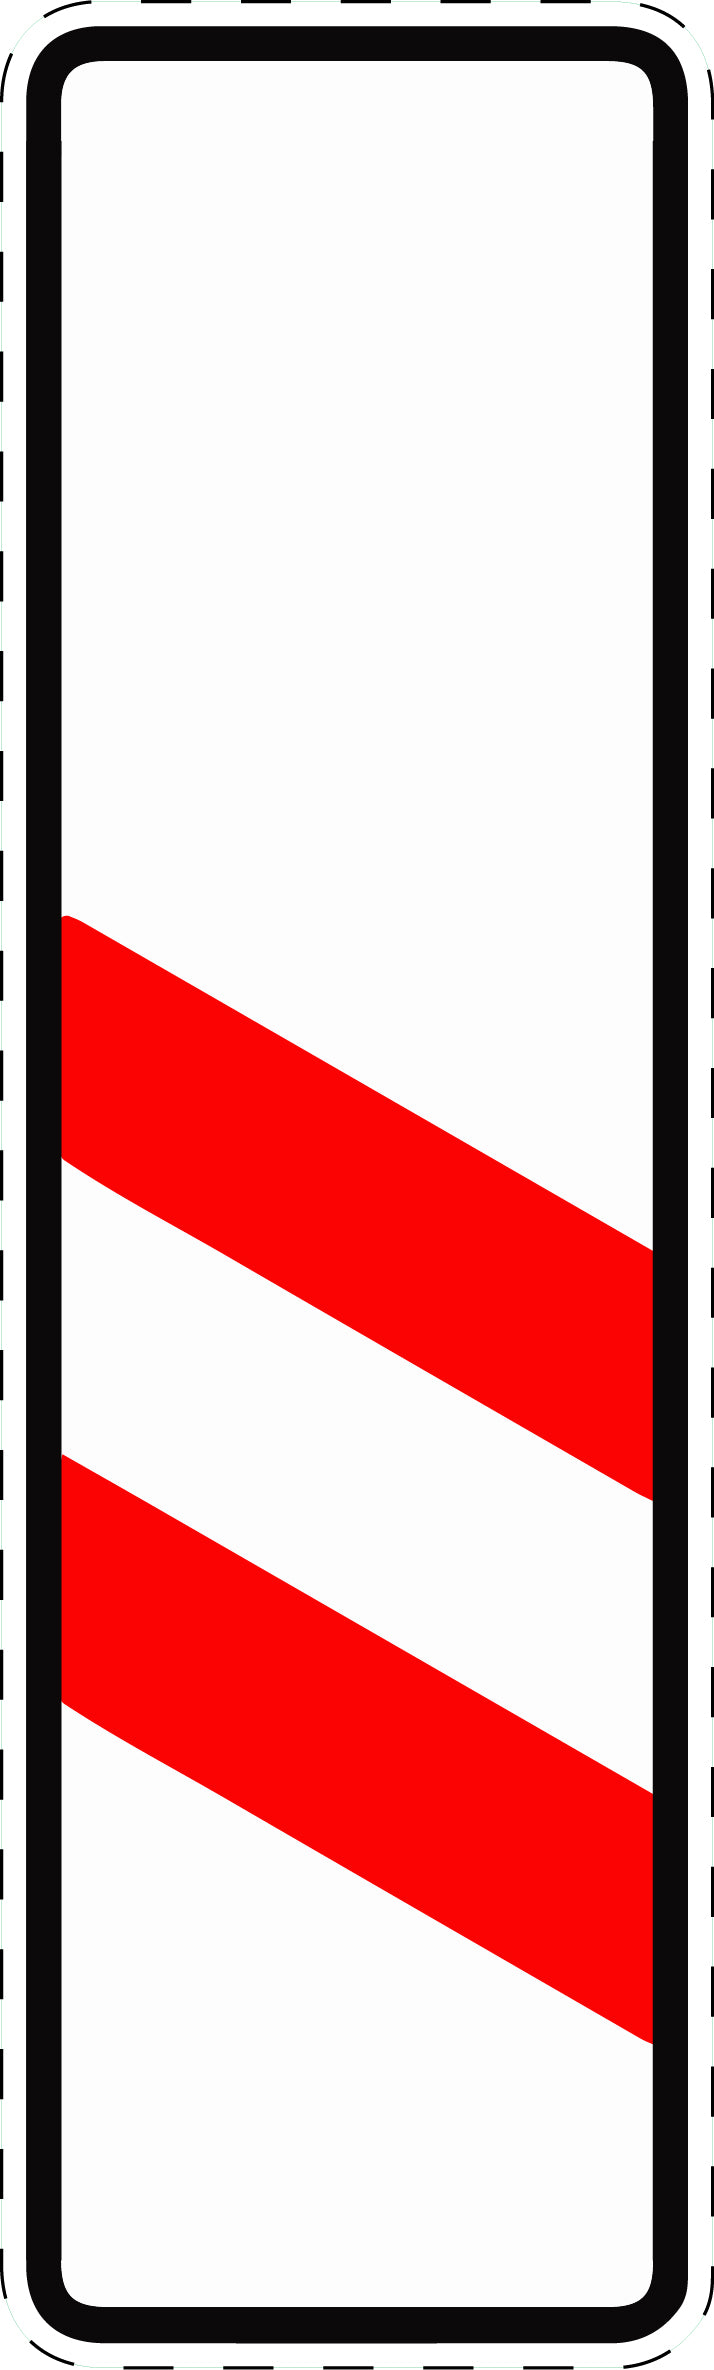 1 Stück Verkehrszeichen  "Zweistreifige Bake ohne Entfernungsangabe (Aufstellung links)" 5-70 cm  ES-Verk-159-20